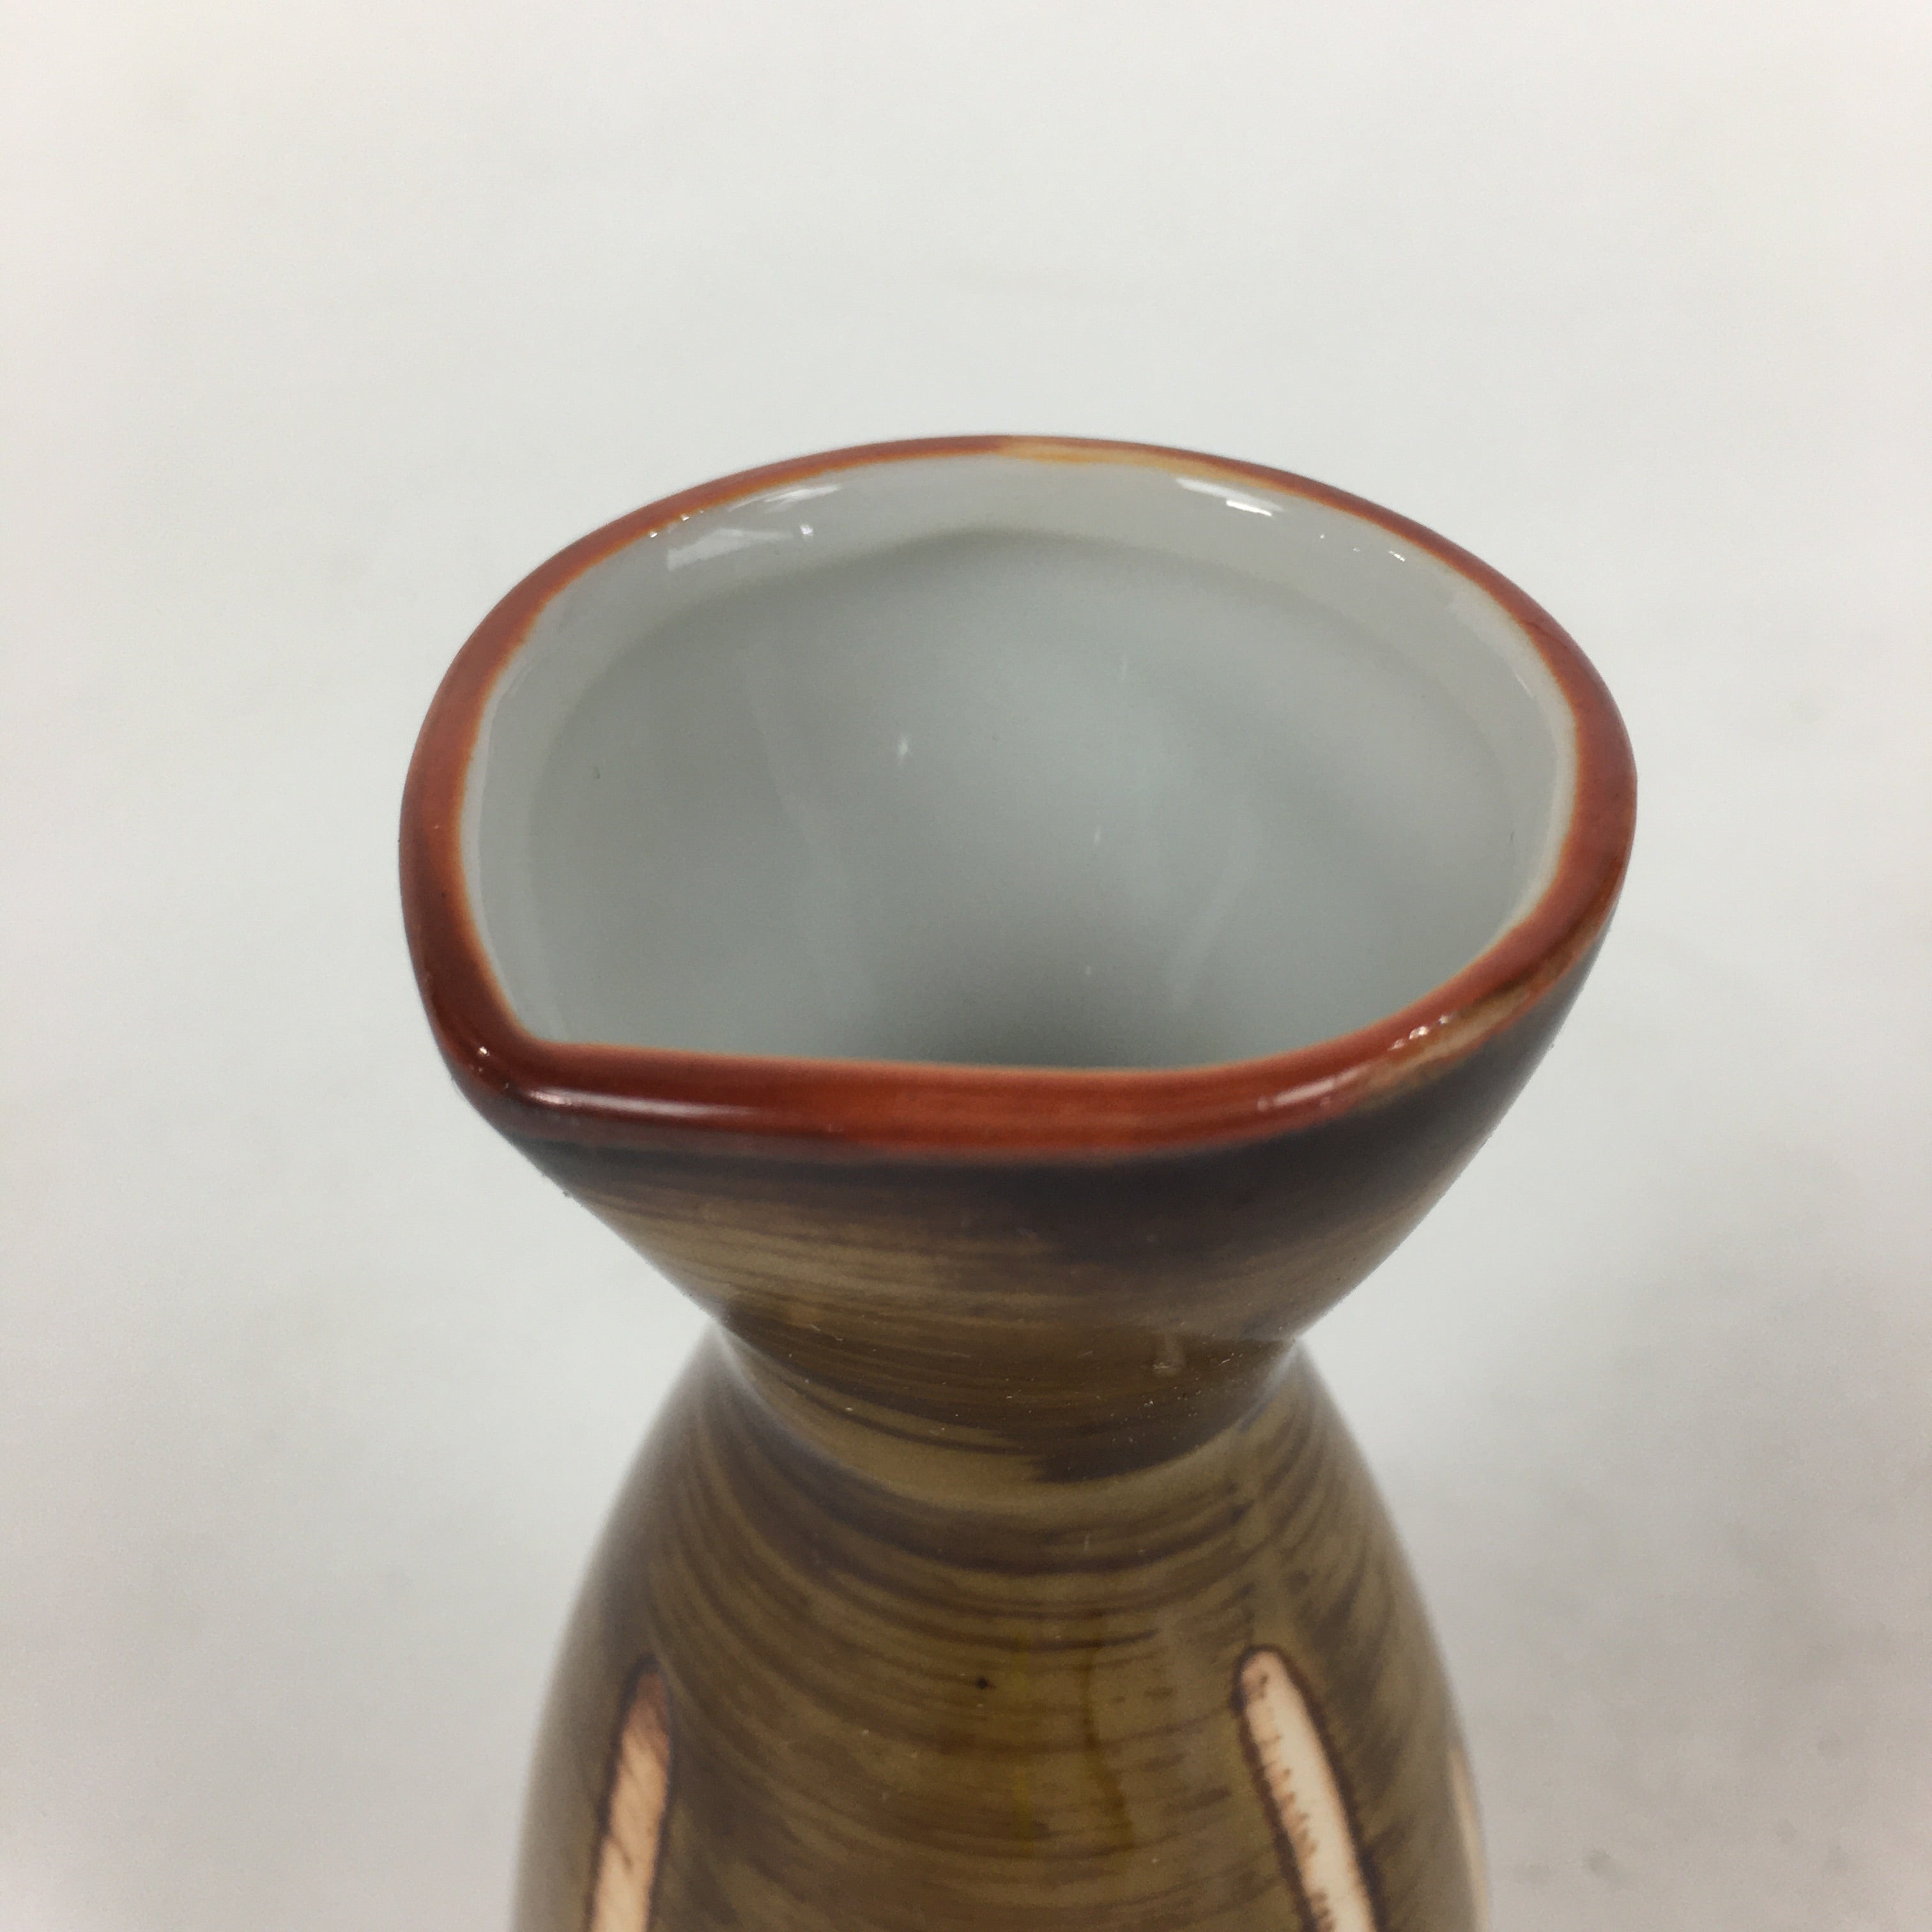 Japanese Porcelain Sake Bottle Vtg Brown White Vertical Line Design Tokkuri TS36